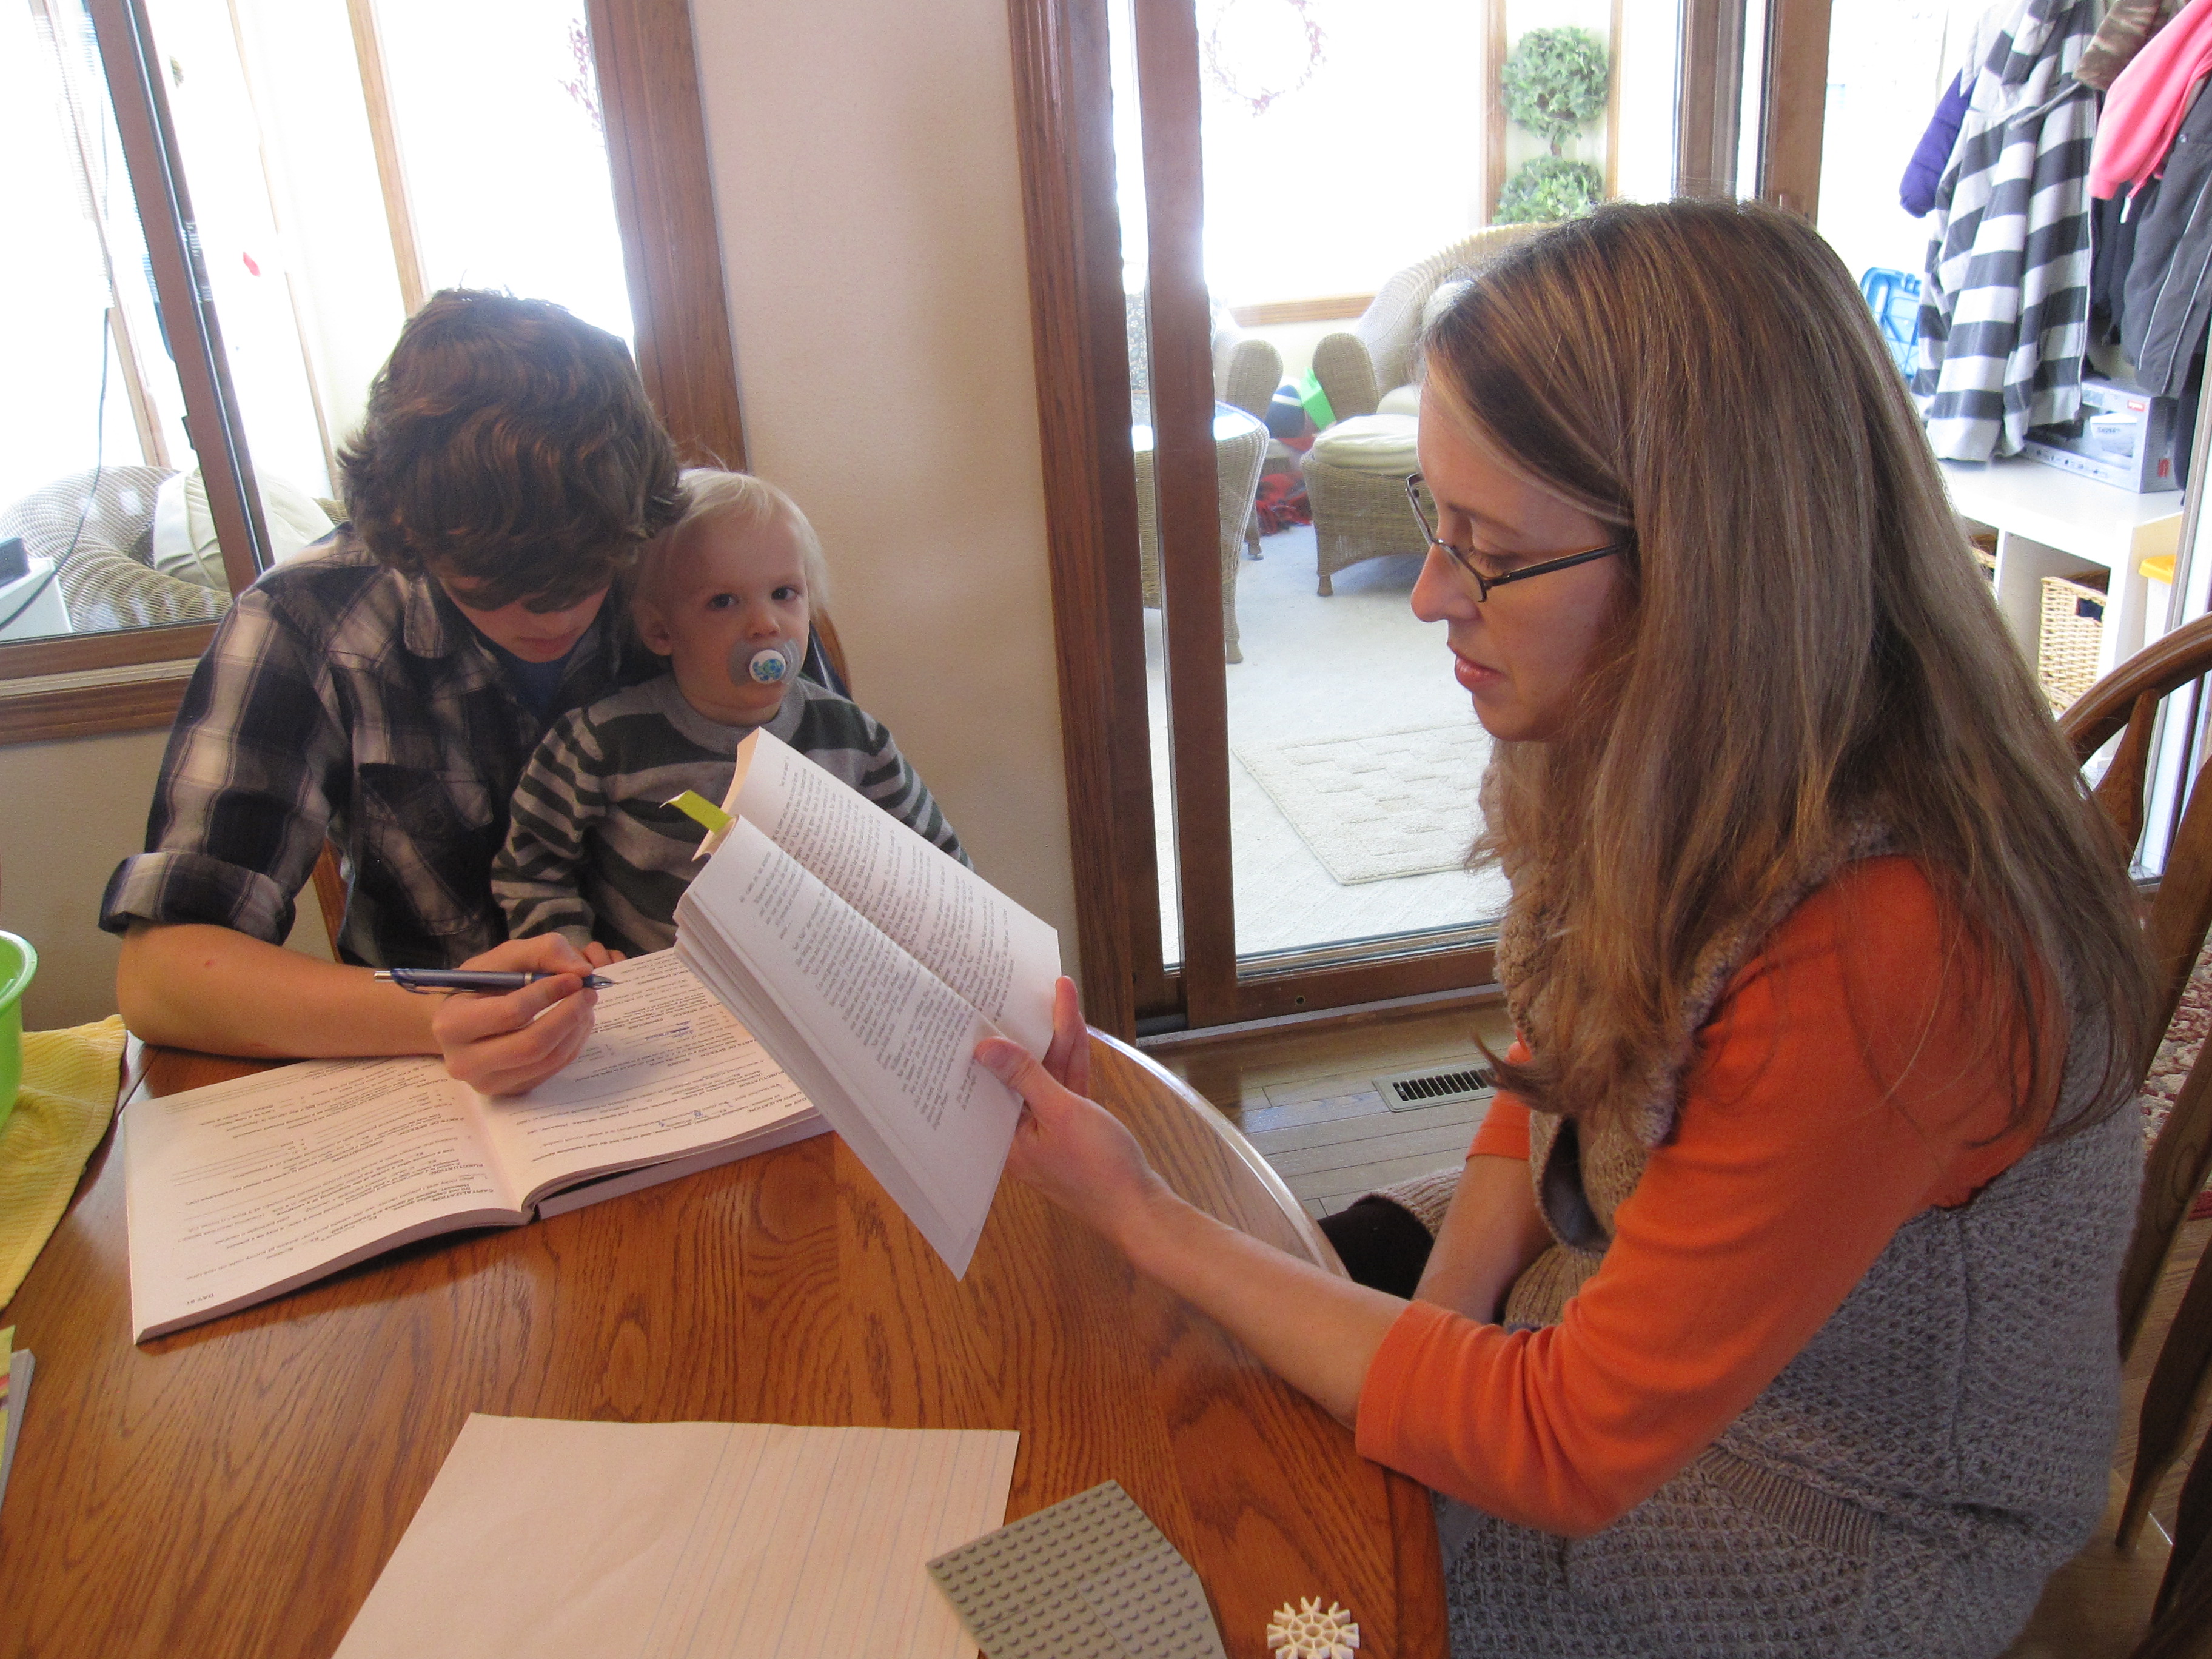 In der Familie Gustoff in Des Moines (USA) macht die Mutter die Lehrerin. Foto: IowaPolitics.com (Flickr)